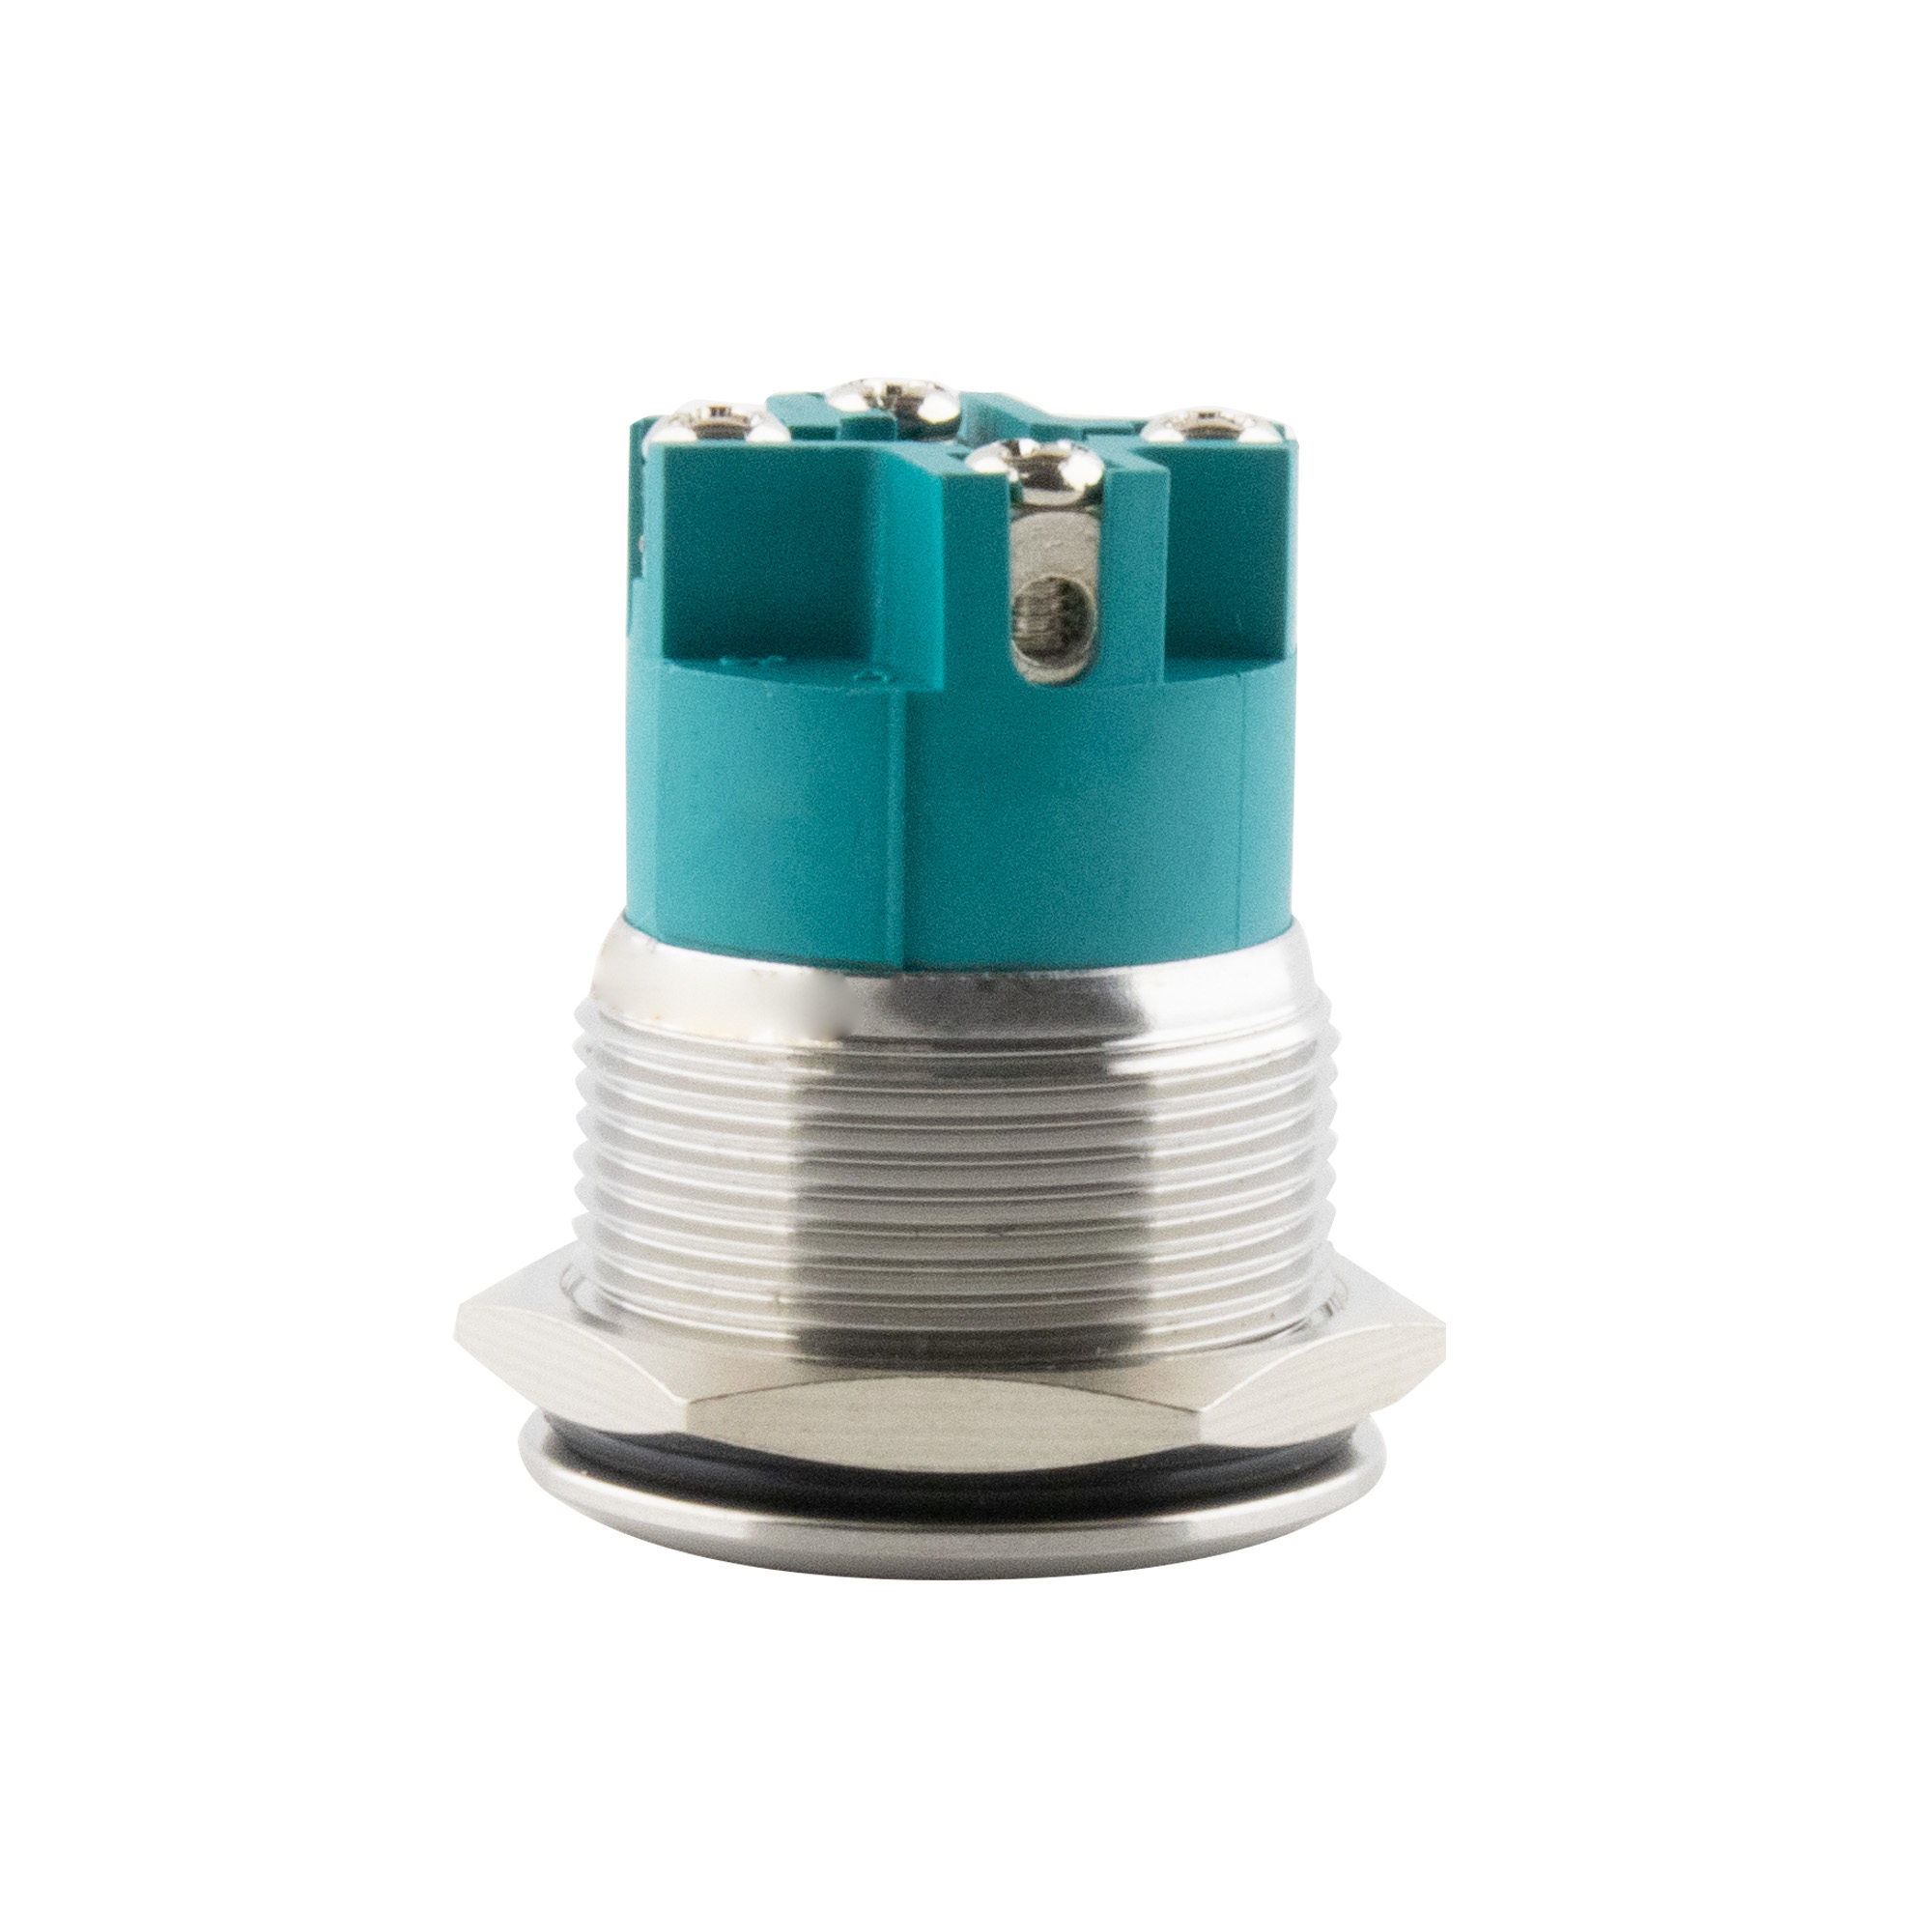 Push-button latching Ø25mm flat LED ring green -screw